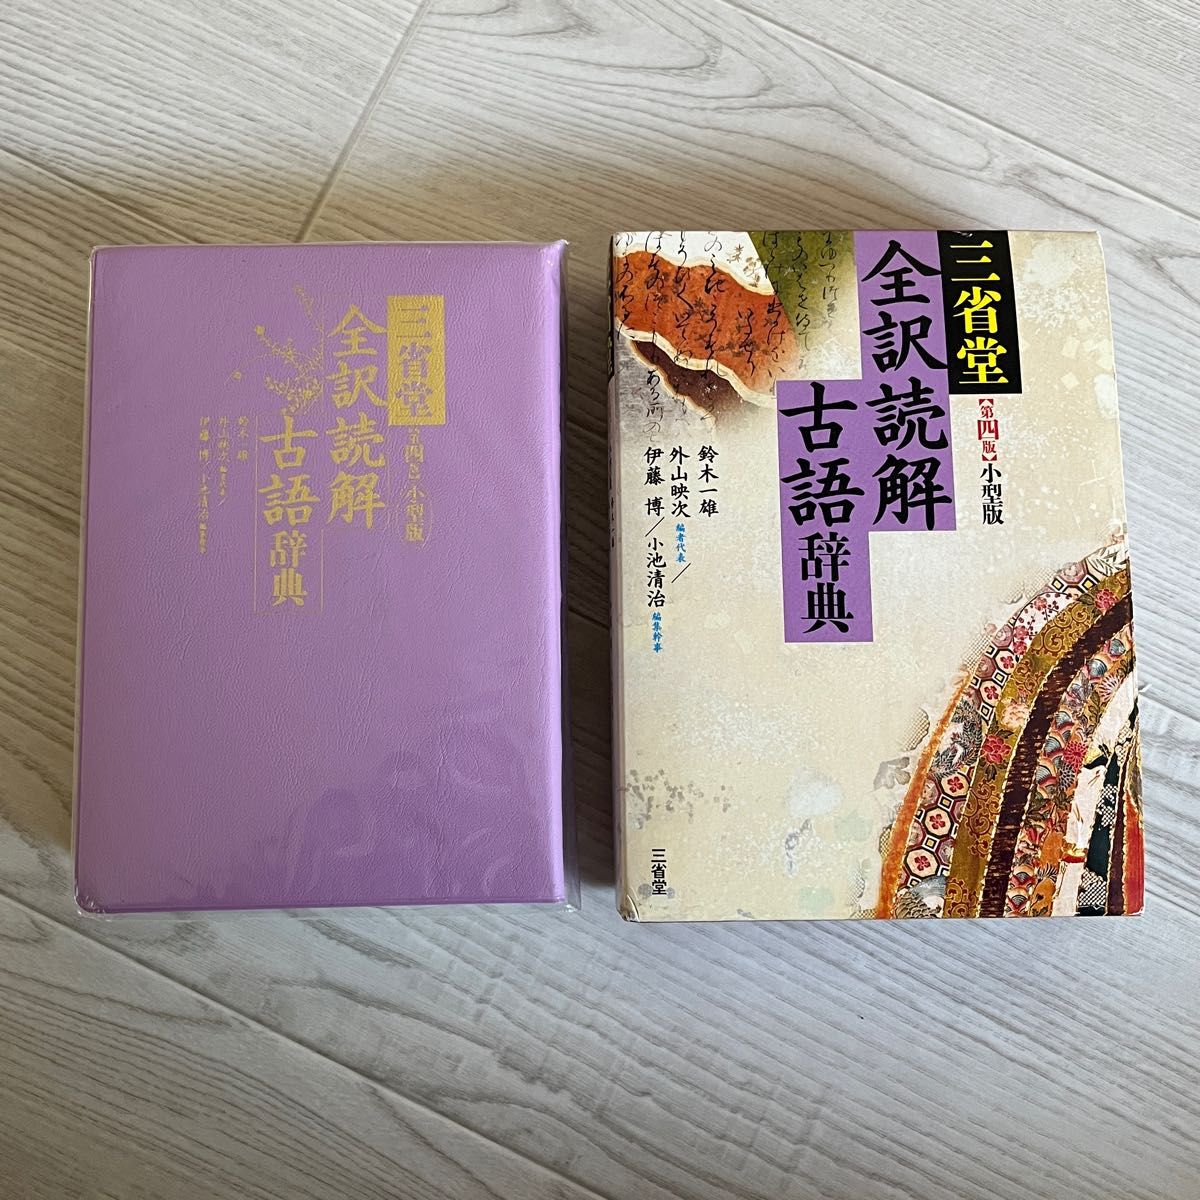 三省堂 全訳読解古語辞典 第四版 小型版